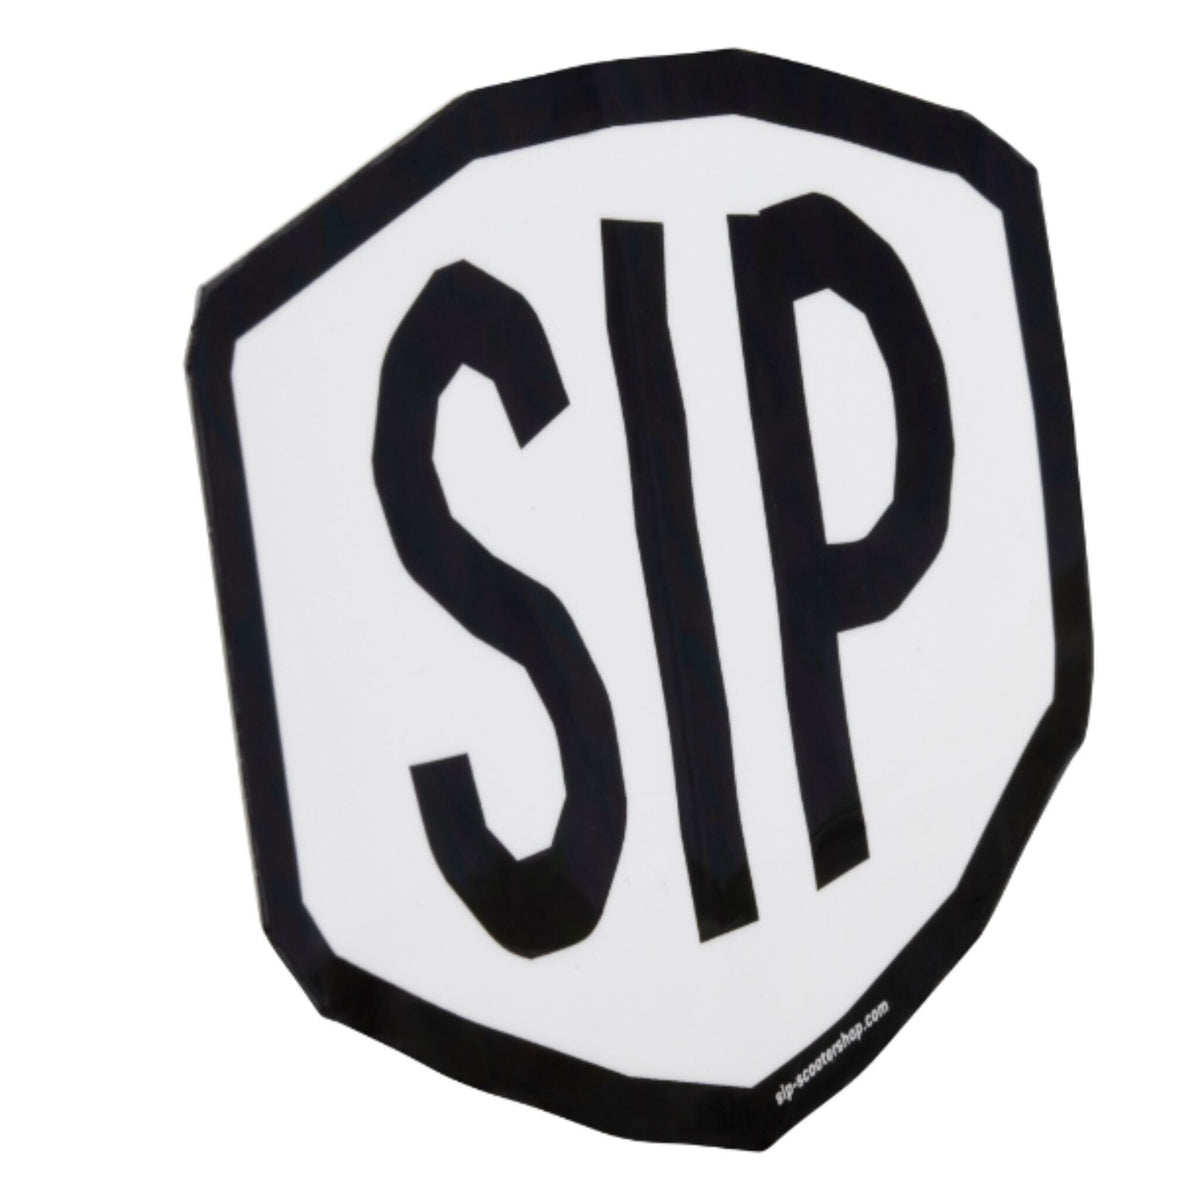 SIP Tape Logo Sticker - 70mm x 55mm - White